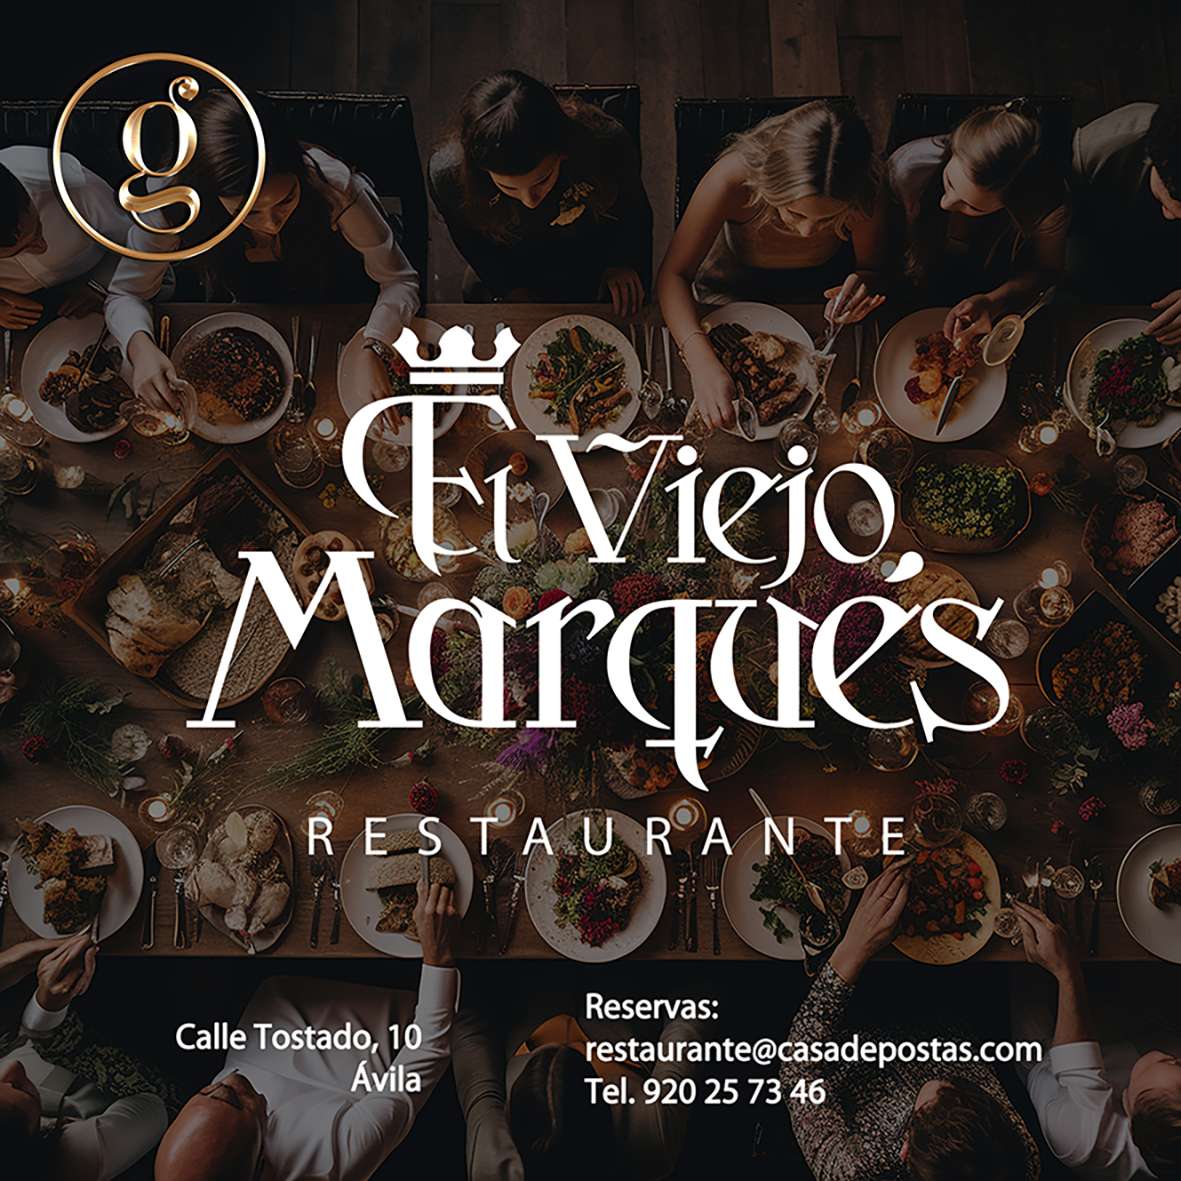 Restaurante El Viejo Marqués